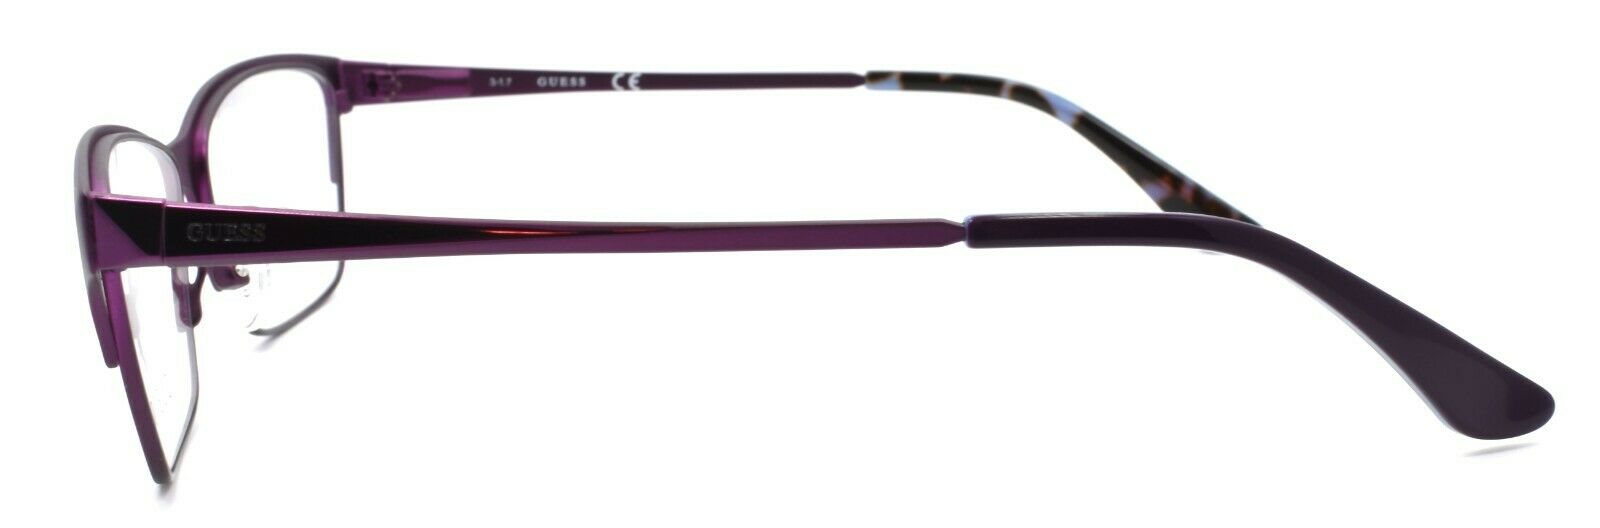 3-GUESS GU2605 082 Women's Eyeglasses Frames 53-14-135 Purple + CASE-664689877058-IKSpecs